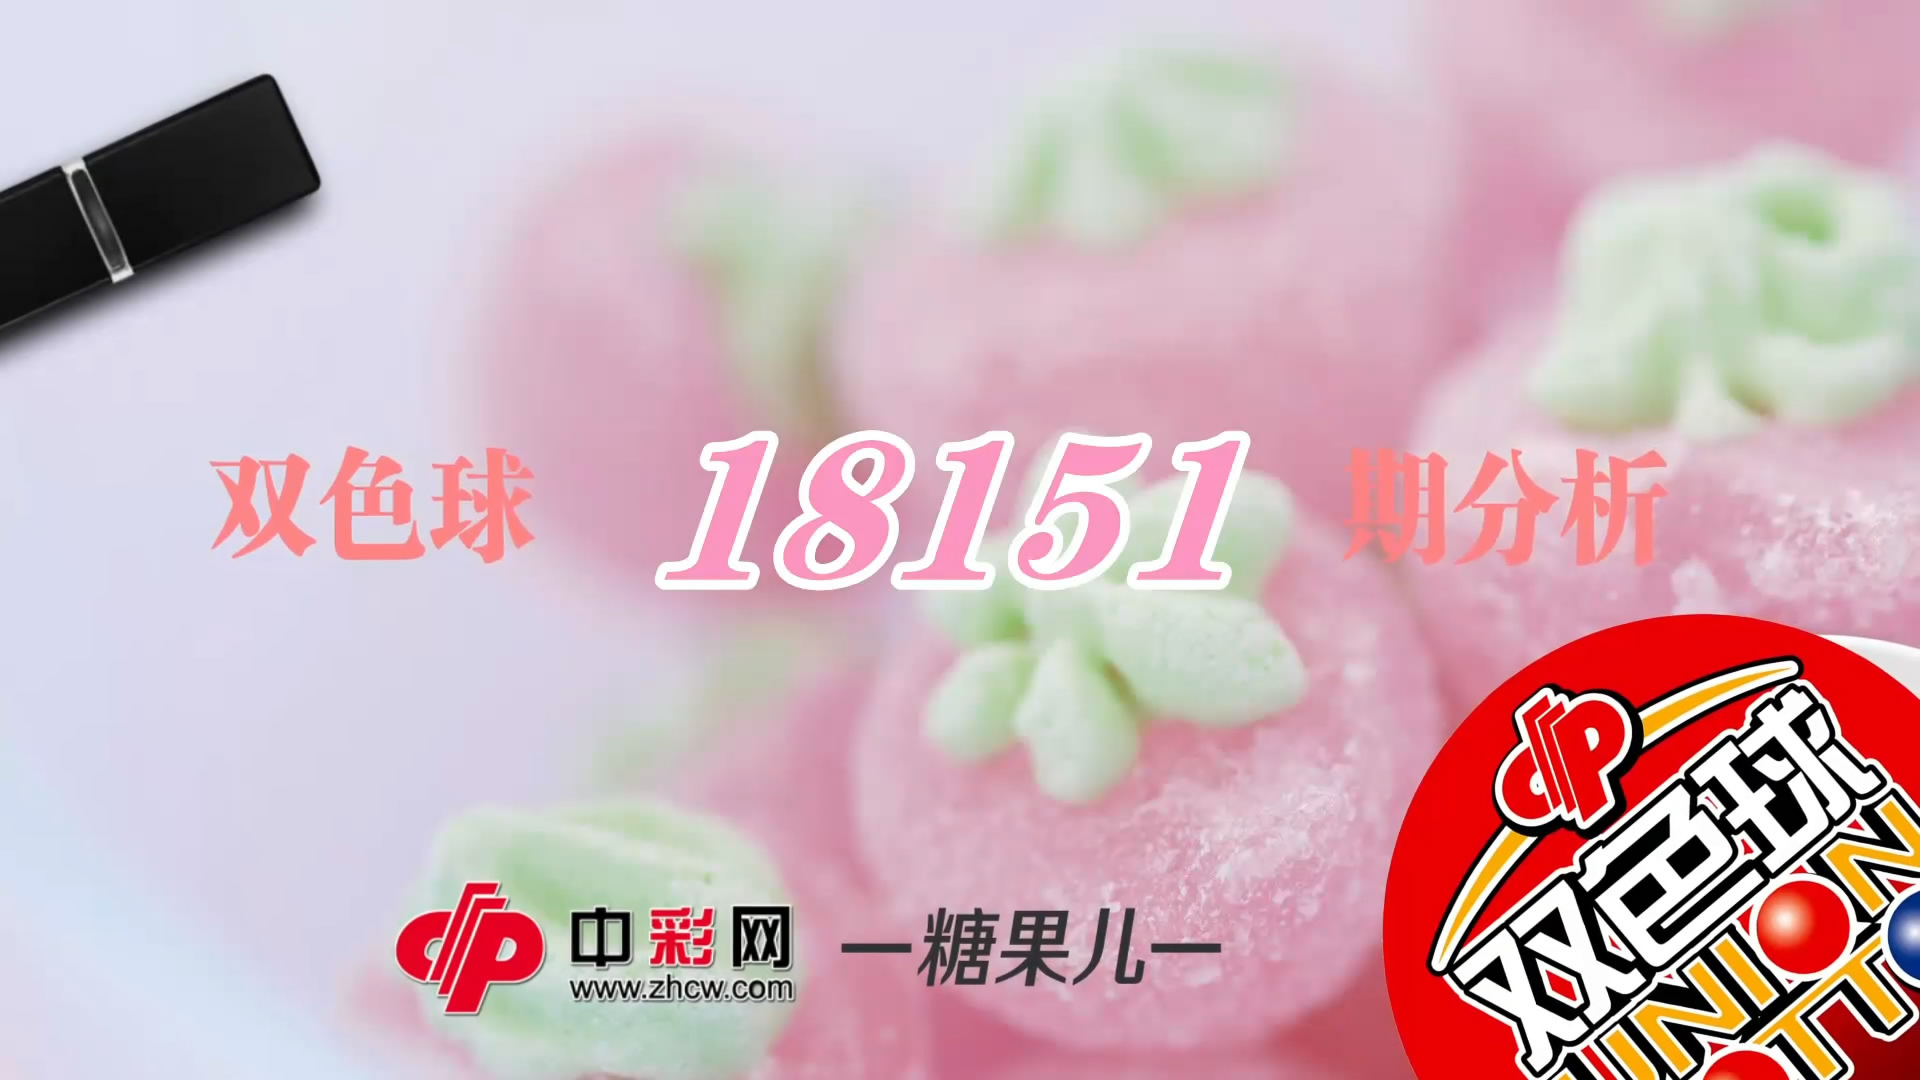 【中彩视频】糖果儿双色球第18151期